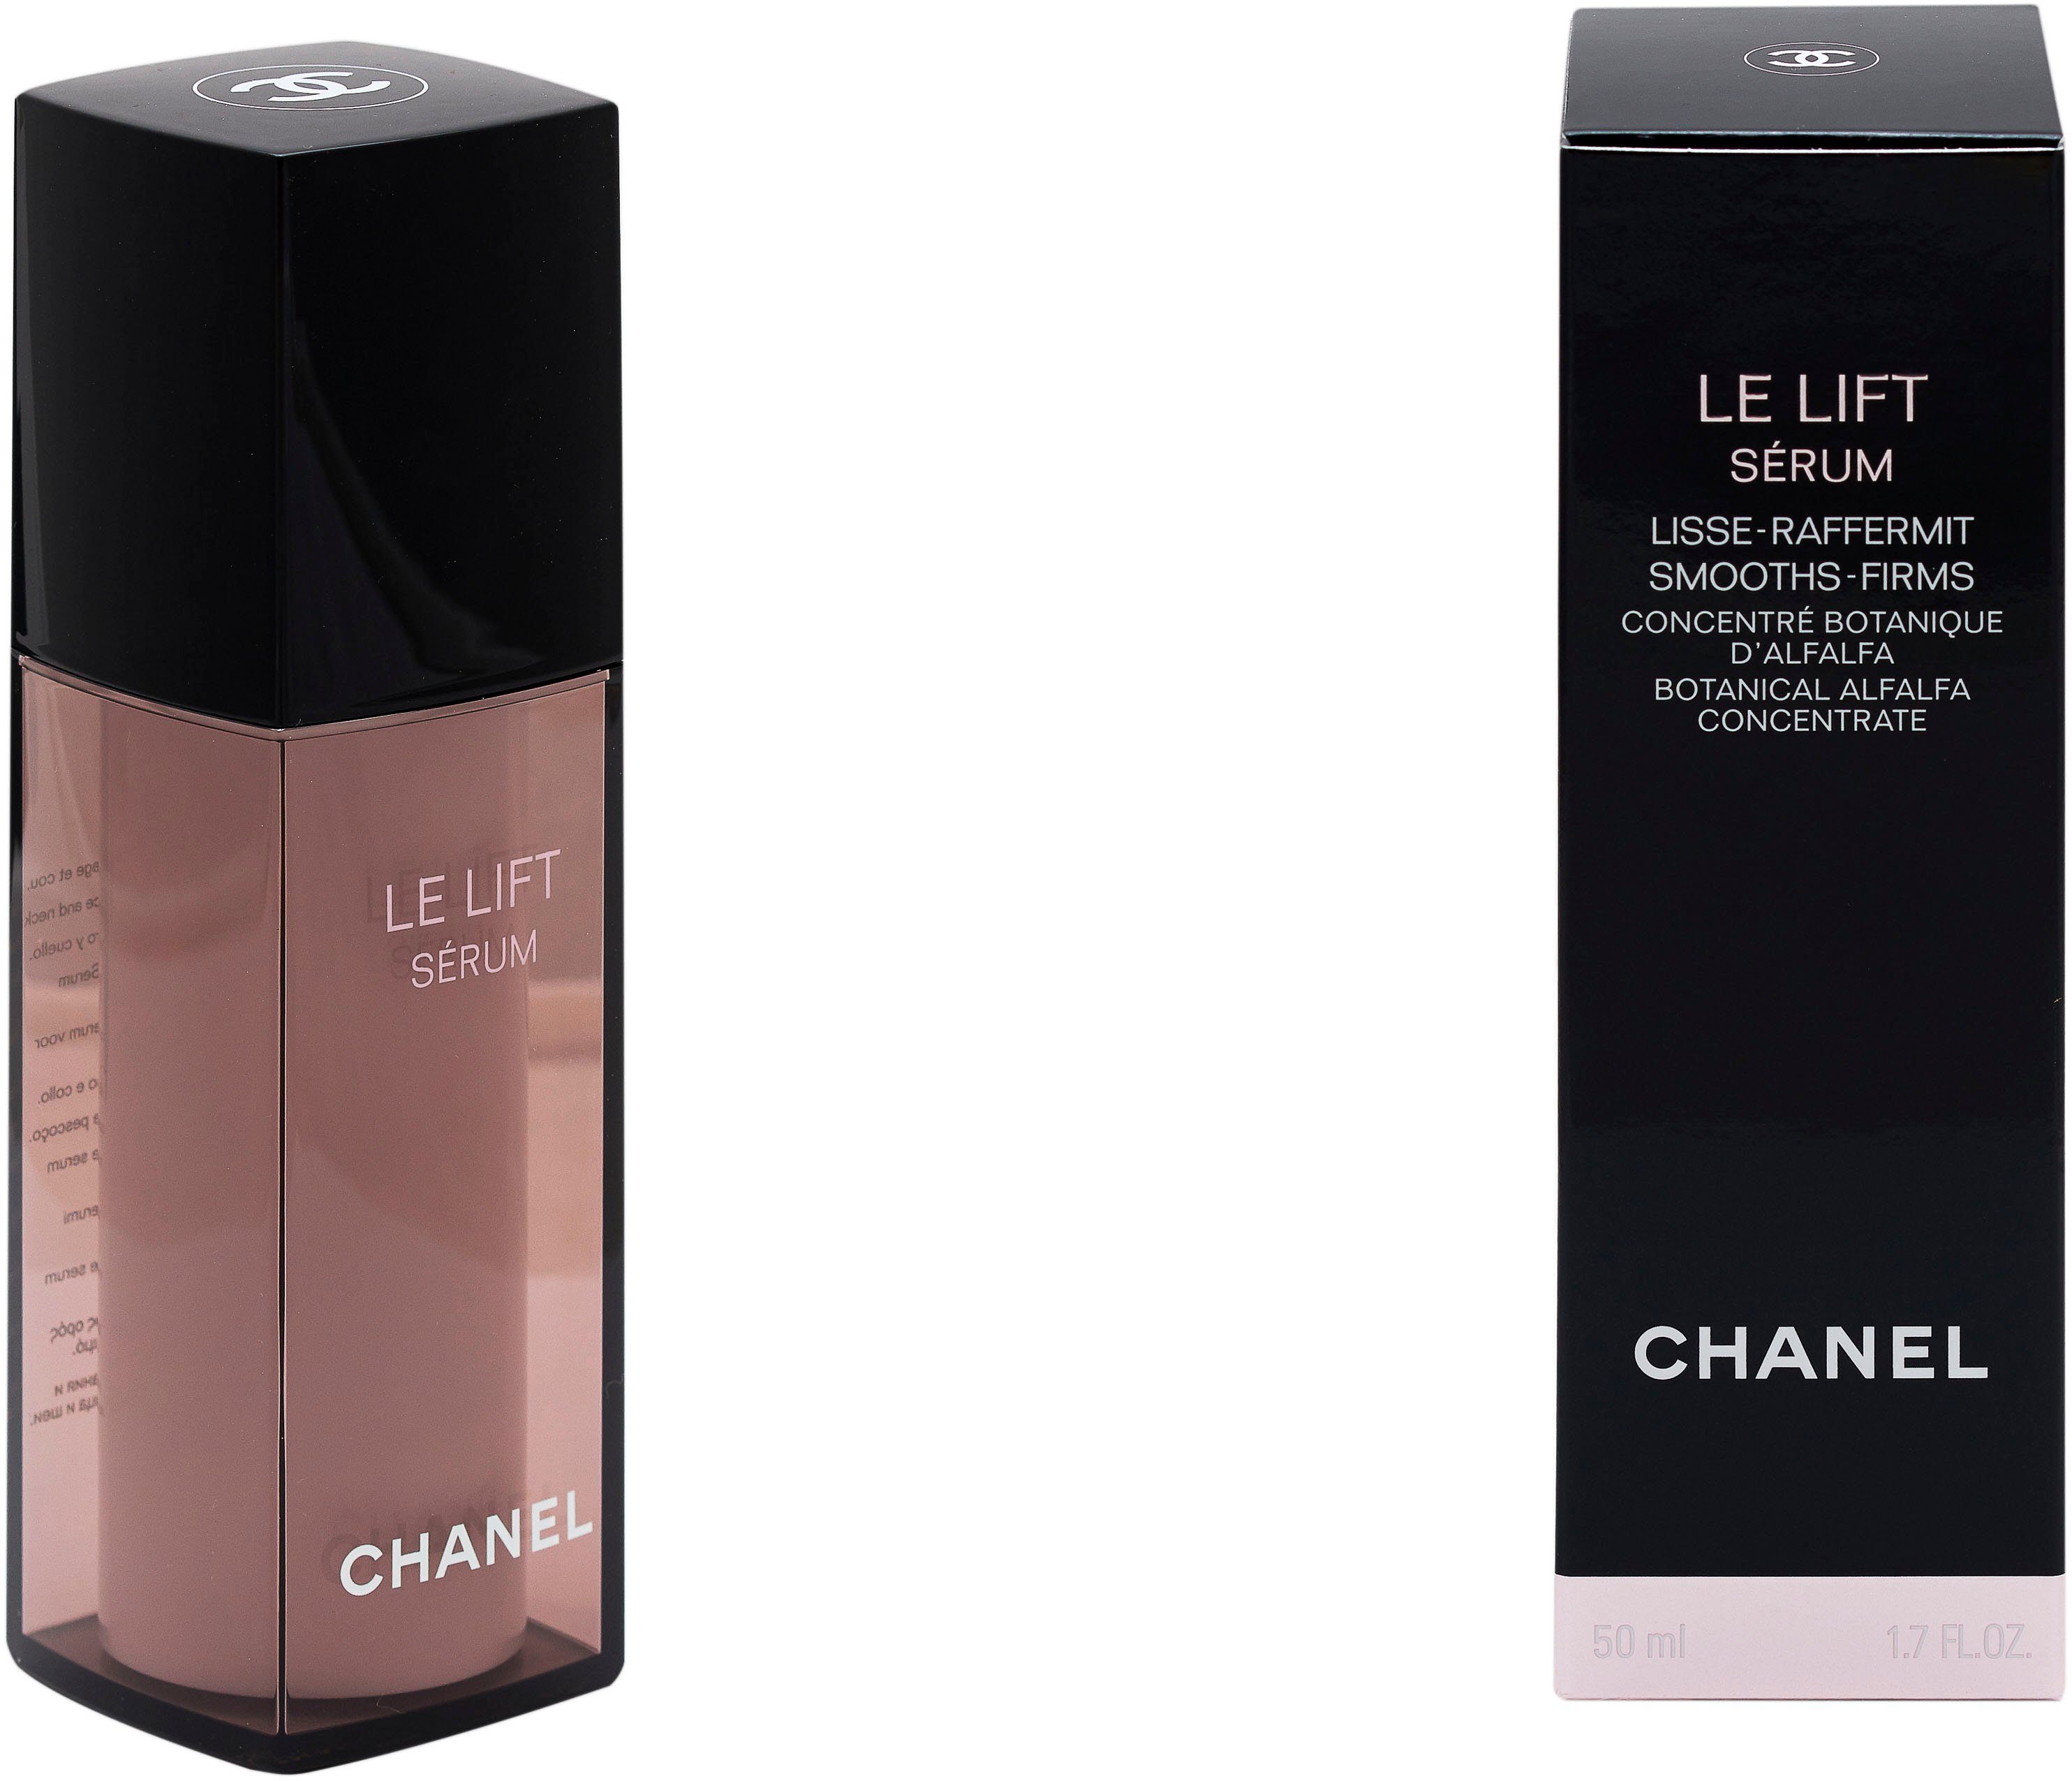 Serum CHANEL Lift Chanel Lisse-Raffermint Gesichtsserum Le